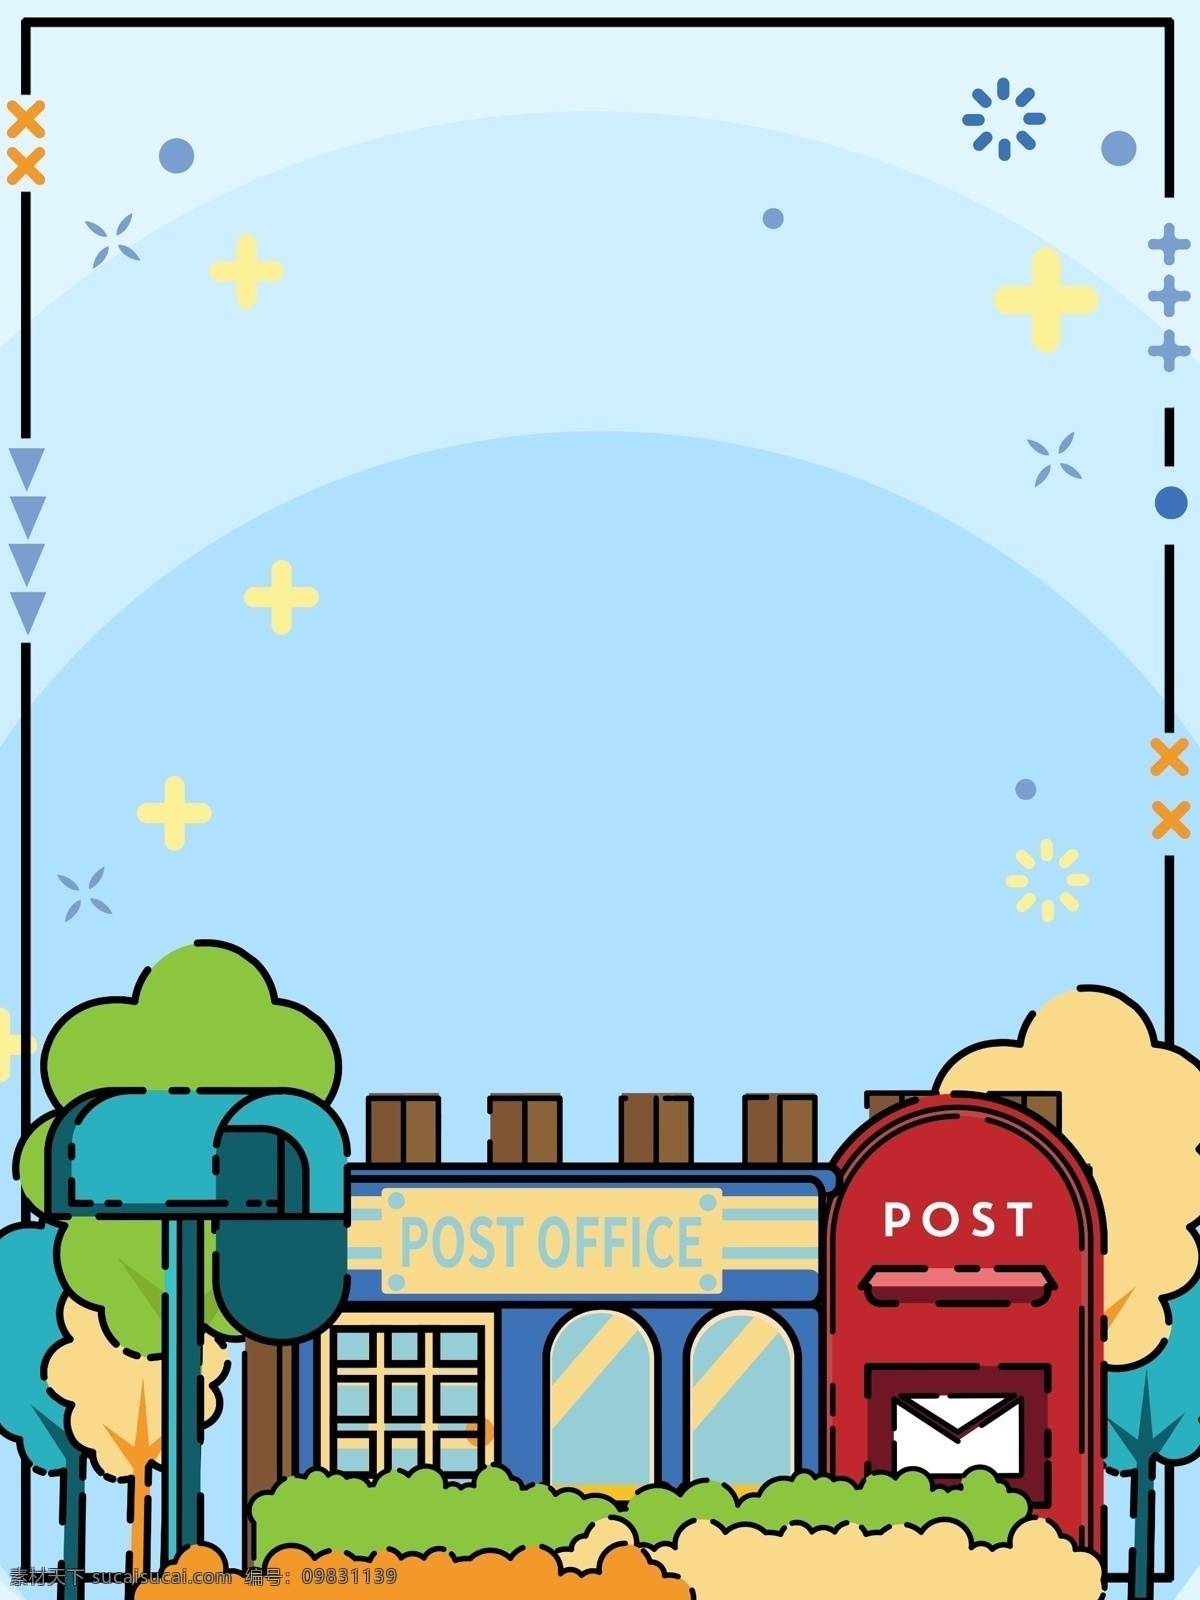 手绘 清新 邮局 广告 背景 广告背景 蓝色背景 树木 街道 信箱 邮筒